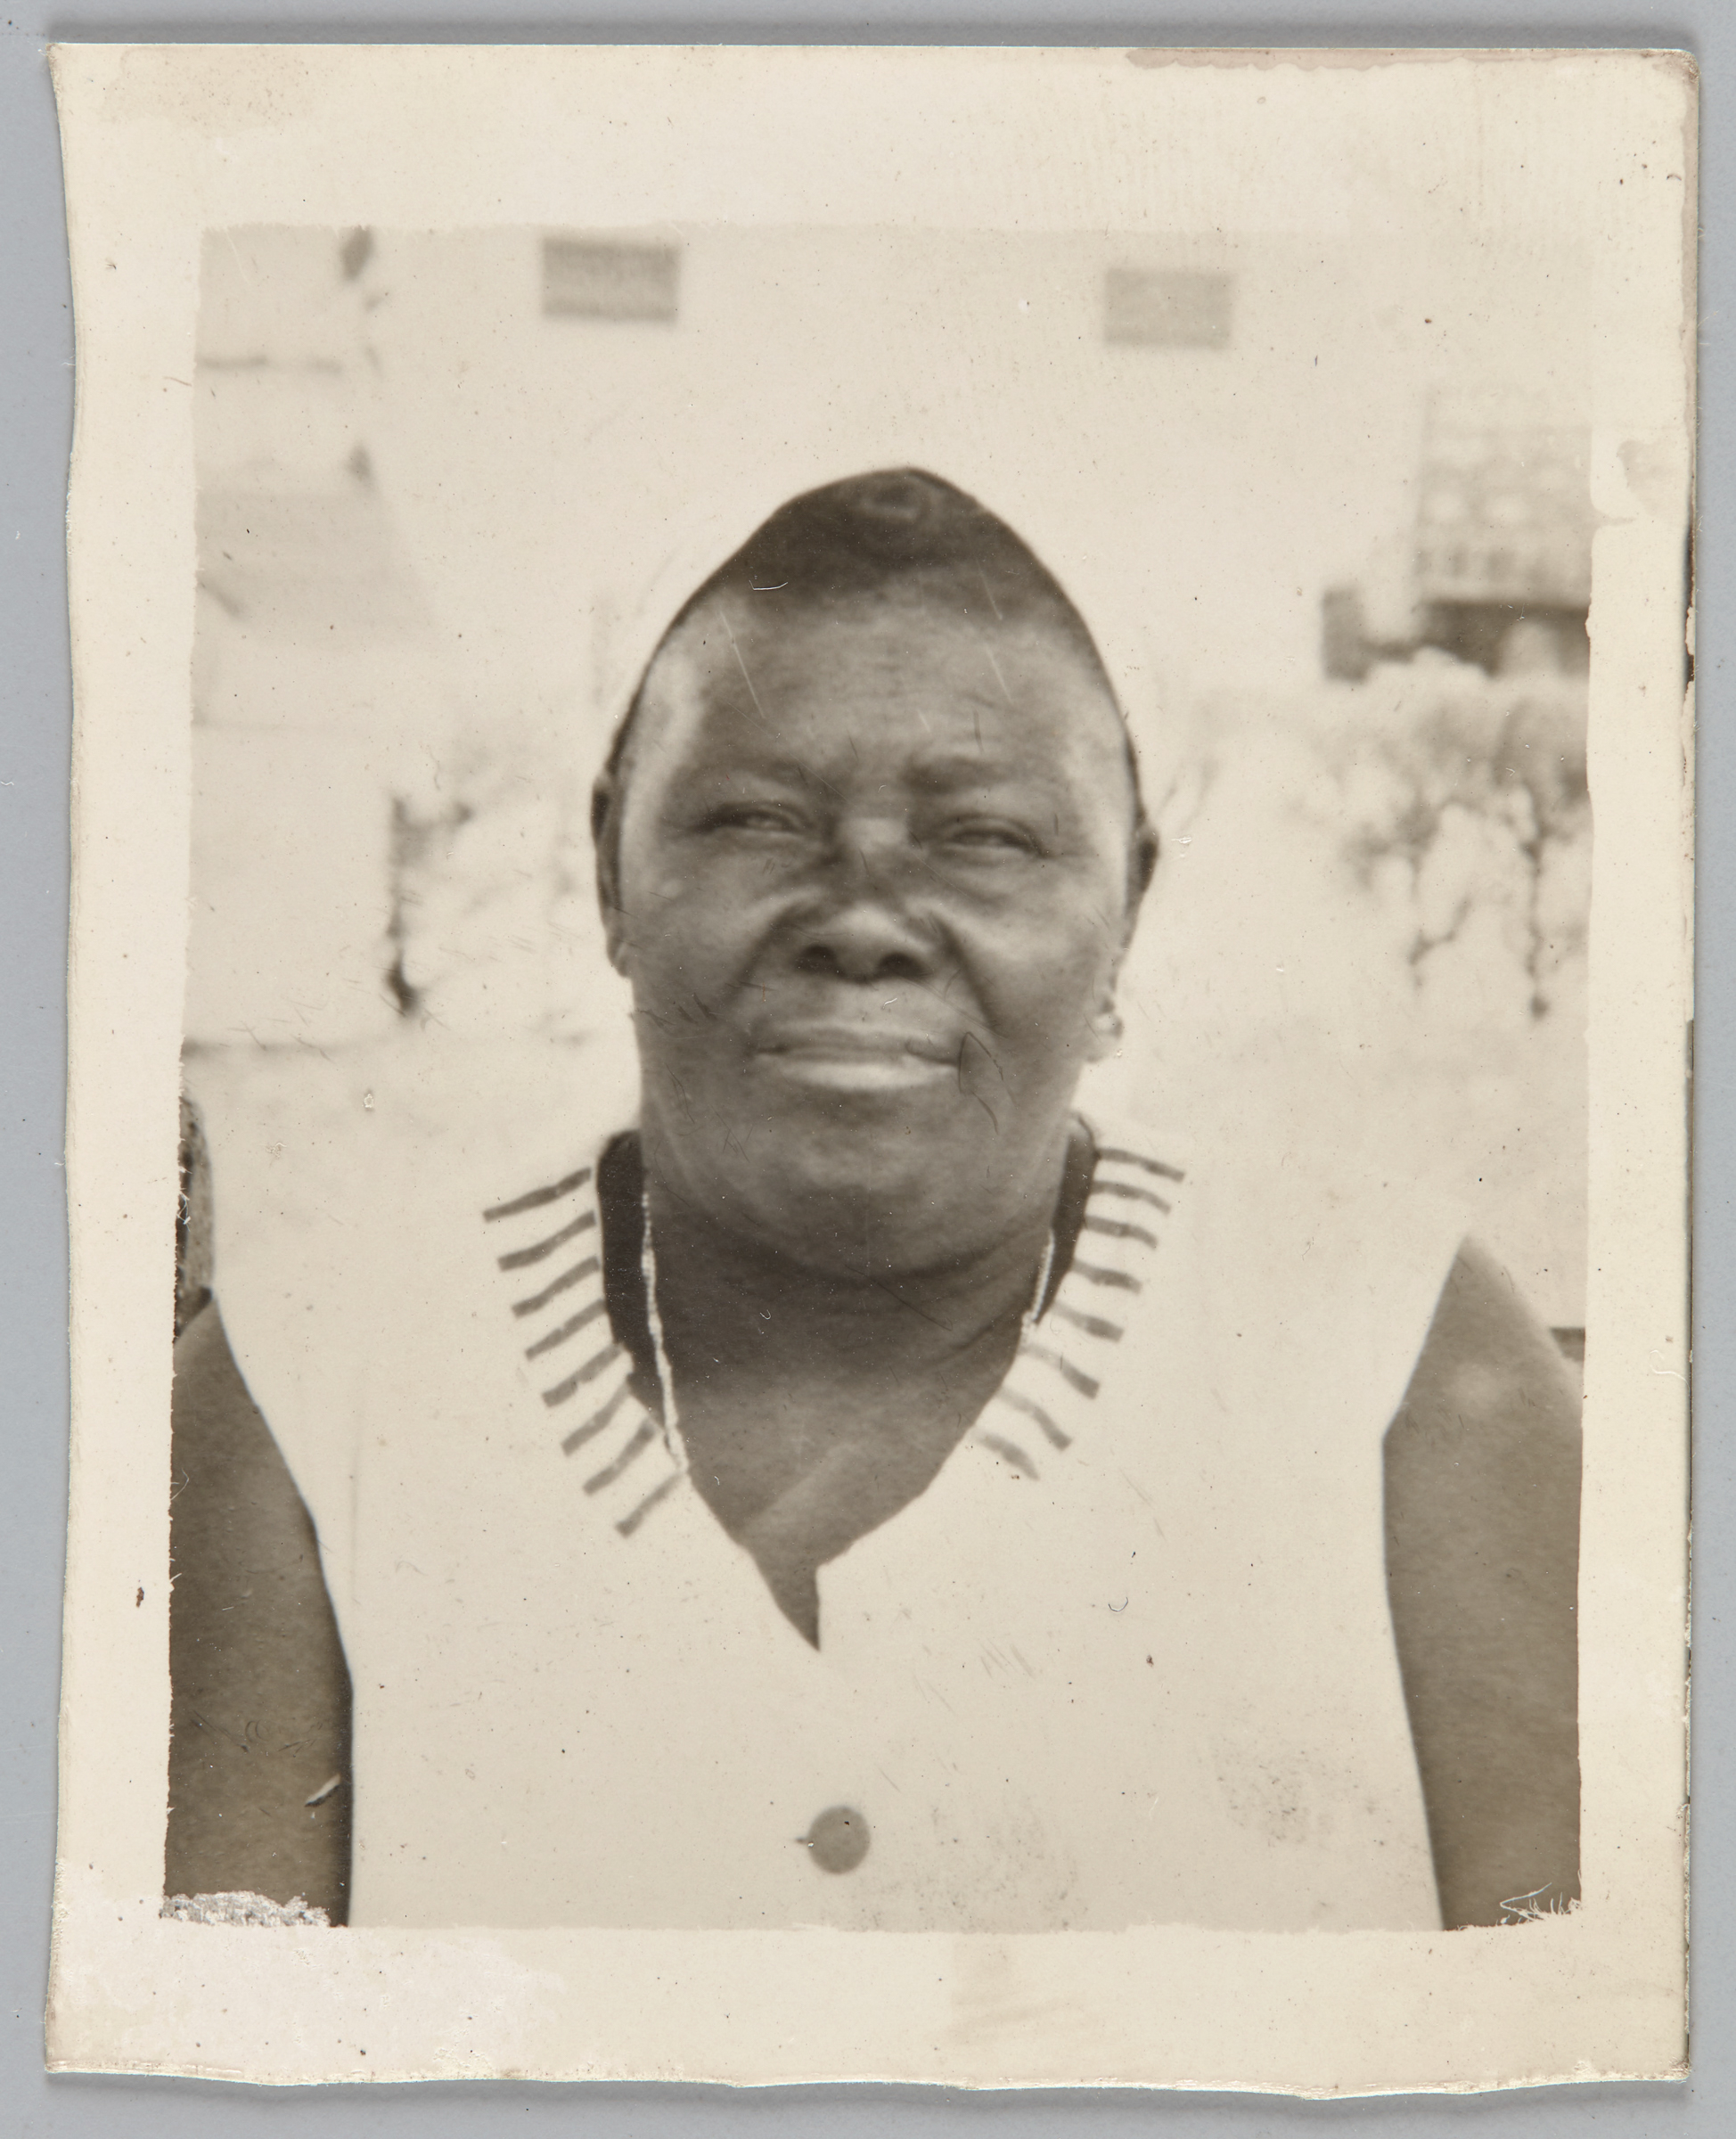 Unknown photographer, Passport photograph of Haitian immigrant worker in Cuba, date unknown. Courtoisie du Centre International de Documentation et d'Information Haïtienne, Caribéenne et Afro-canadienne (CIDHICA)